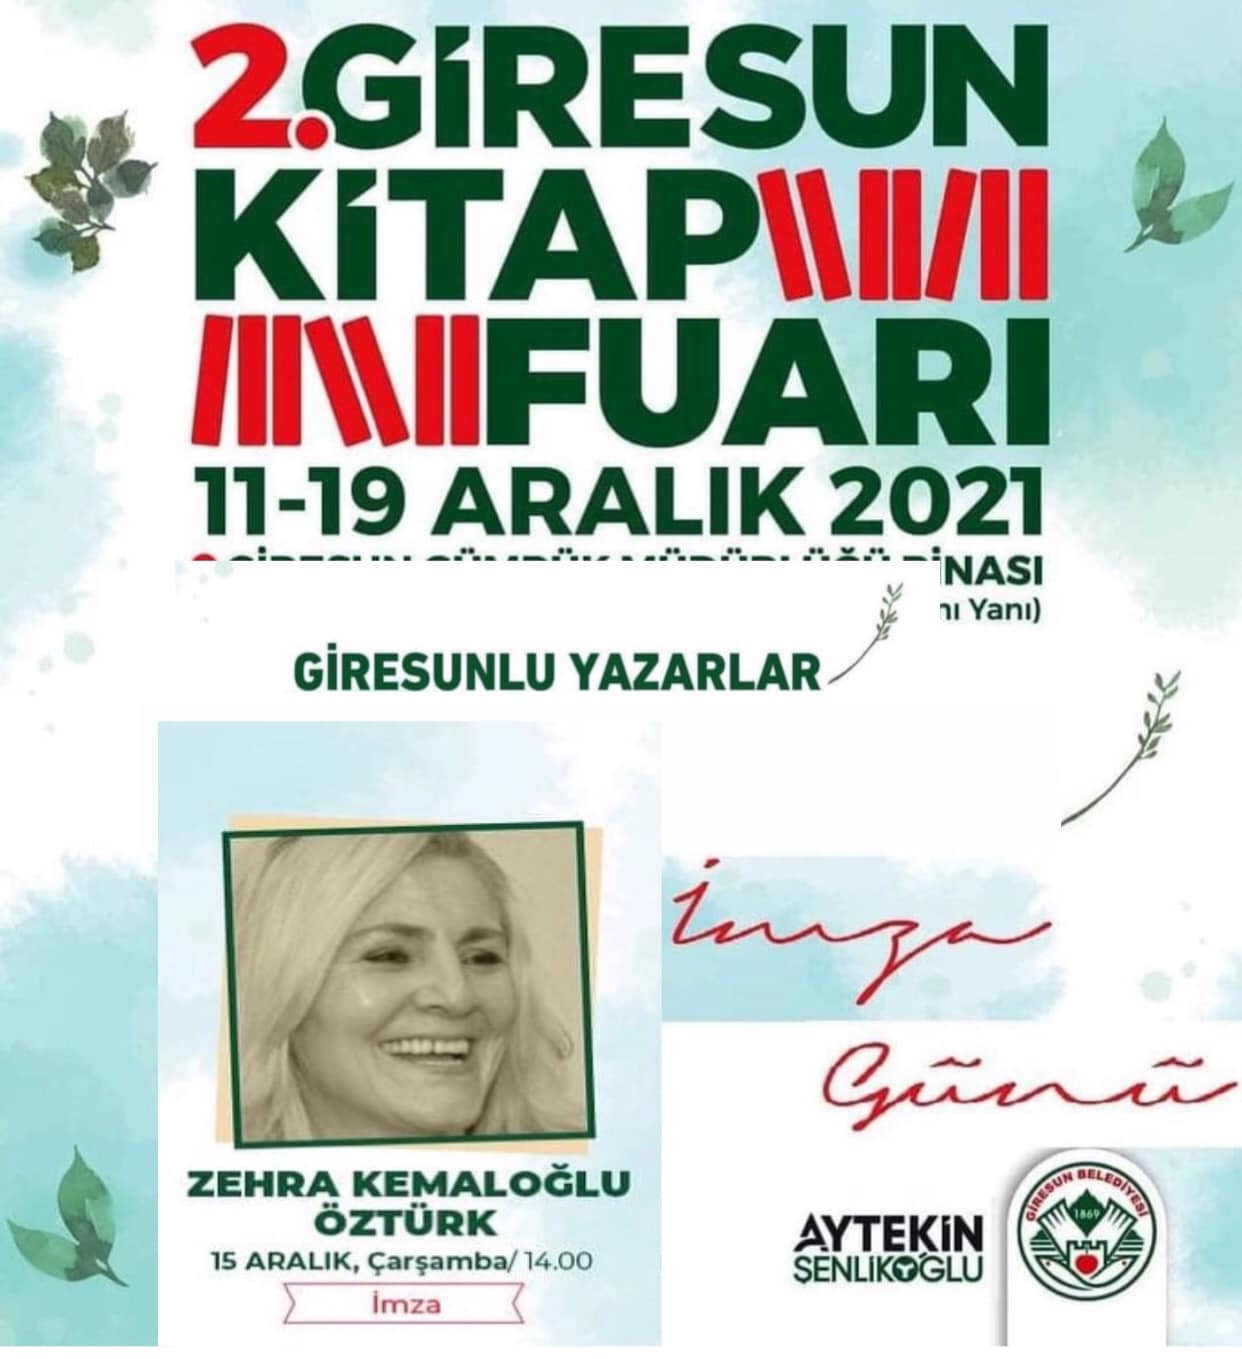 Zehra Kemaloğlu Öztürk